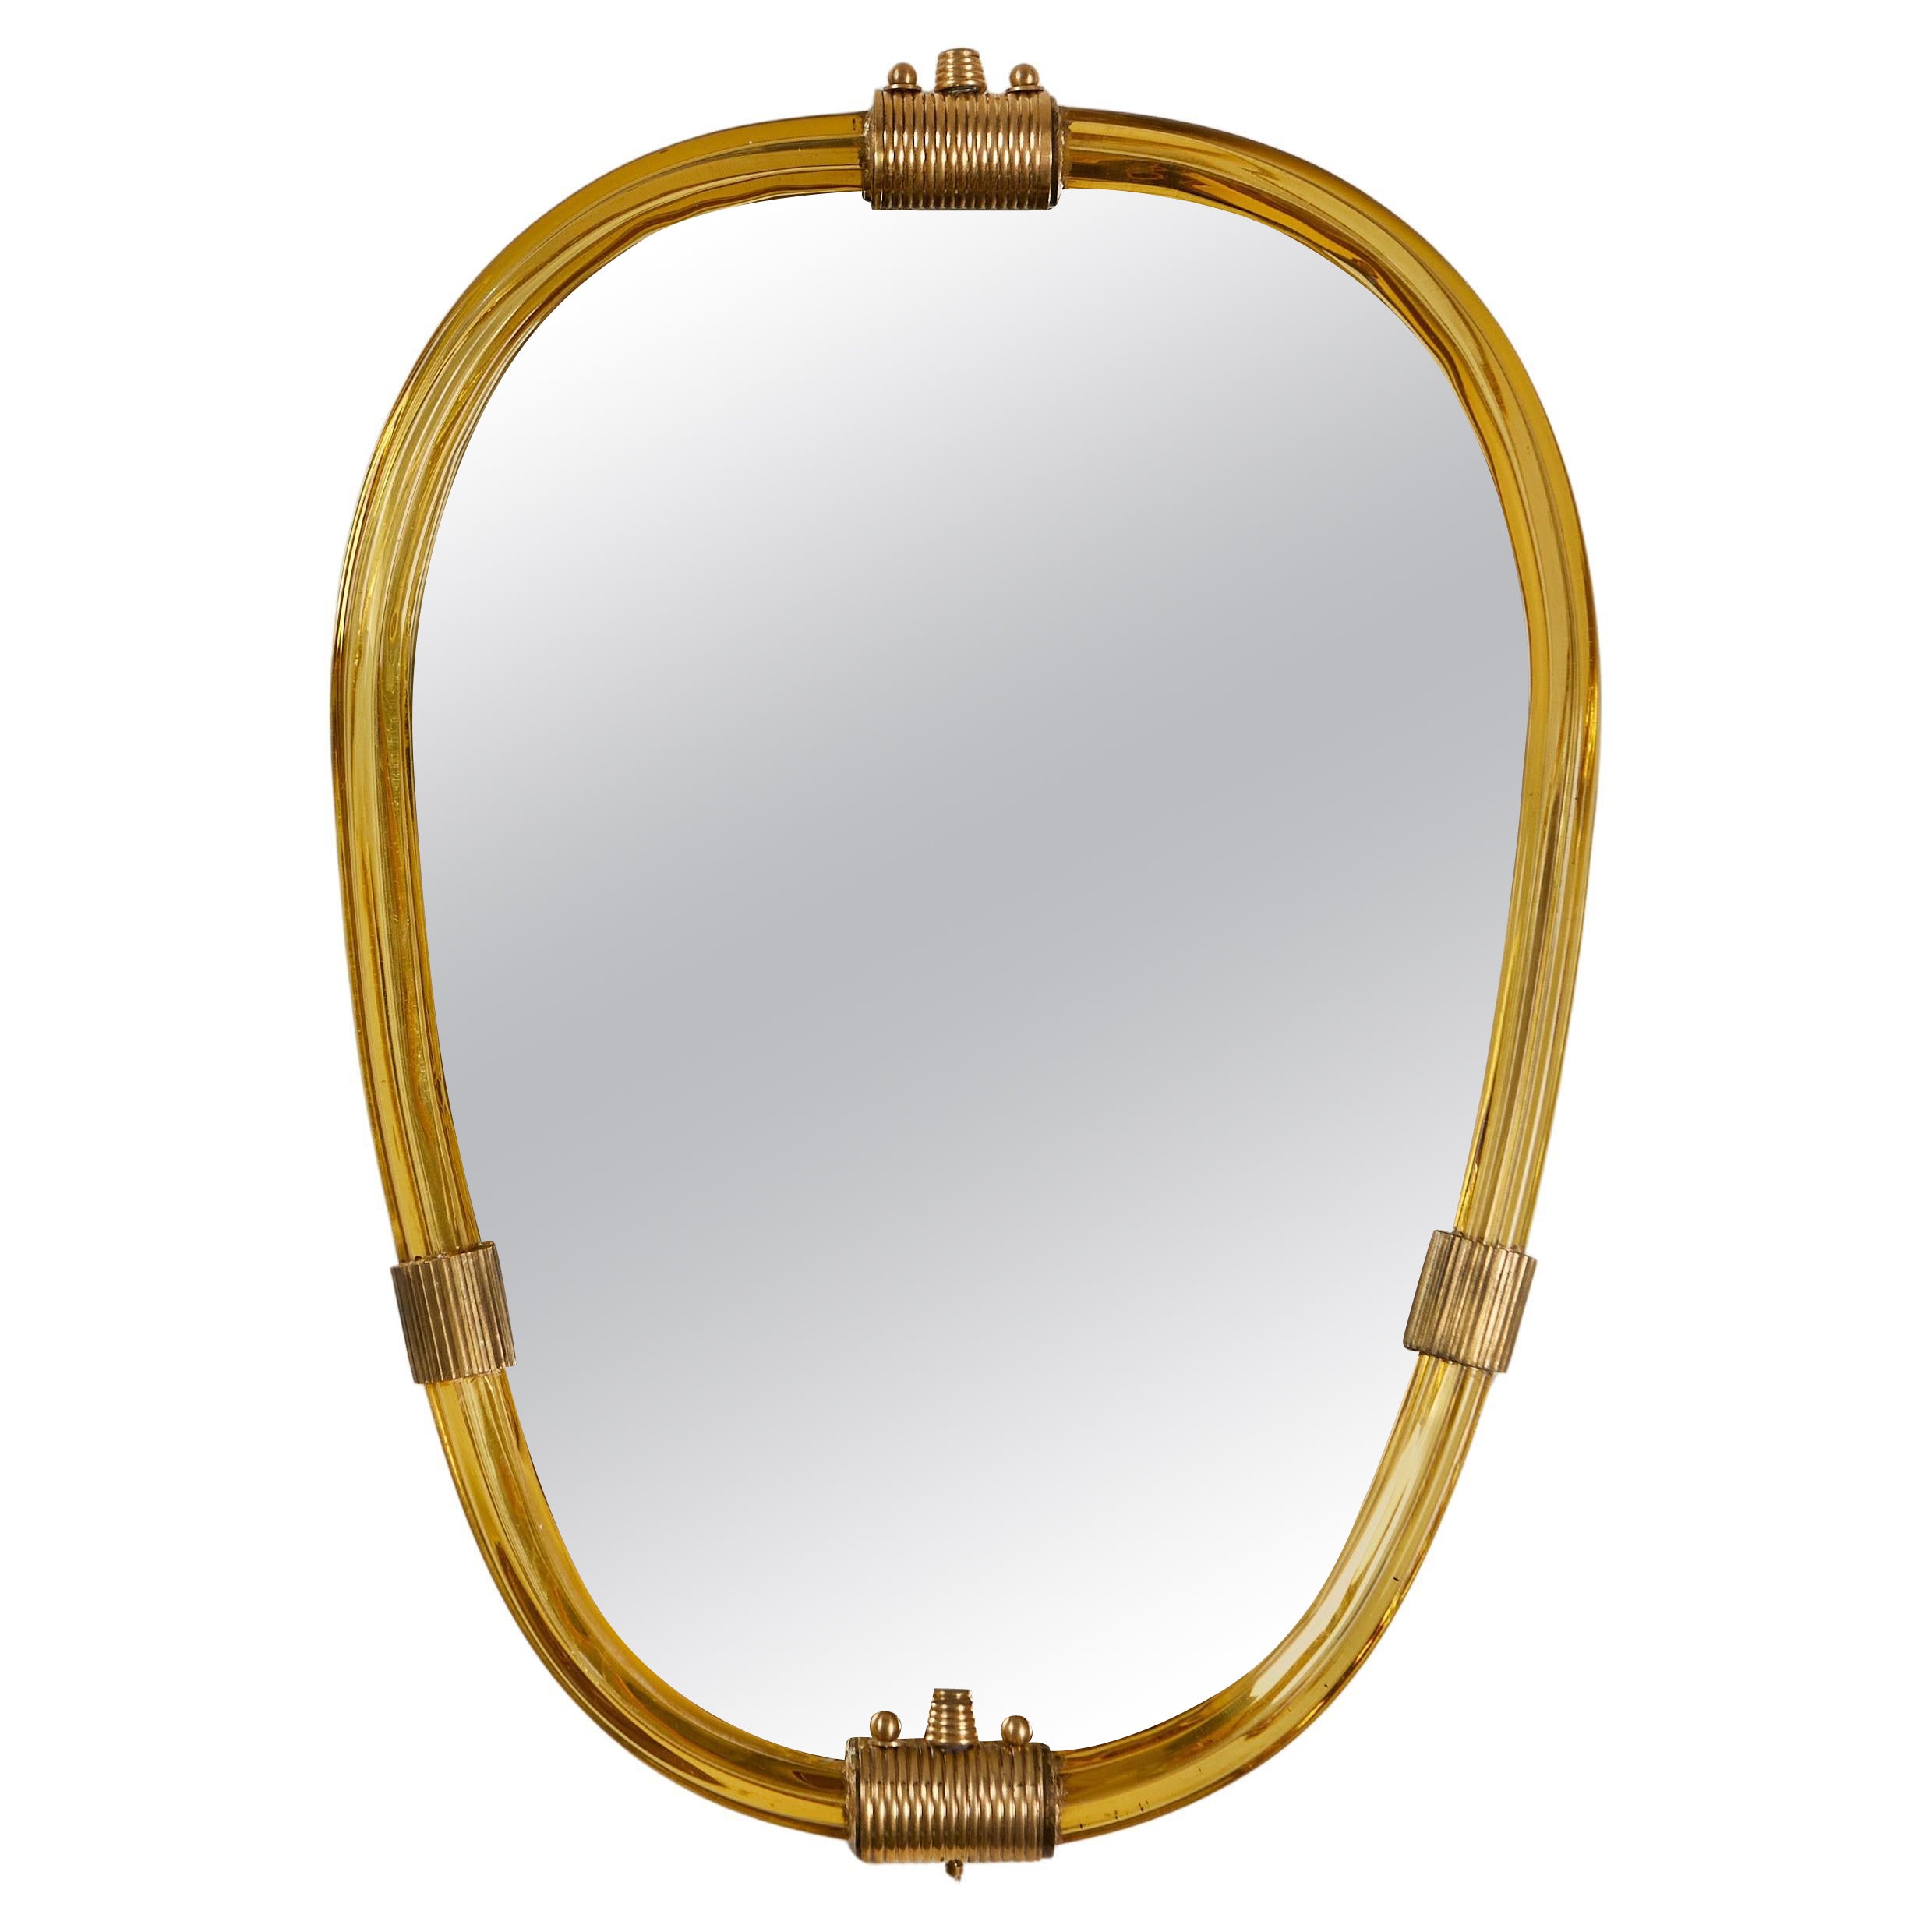 1960s Italian Murano gold oval mirror For Sale